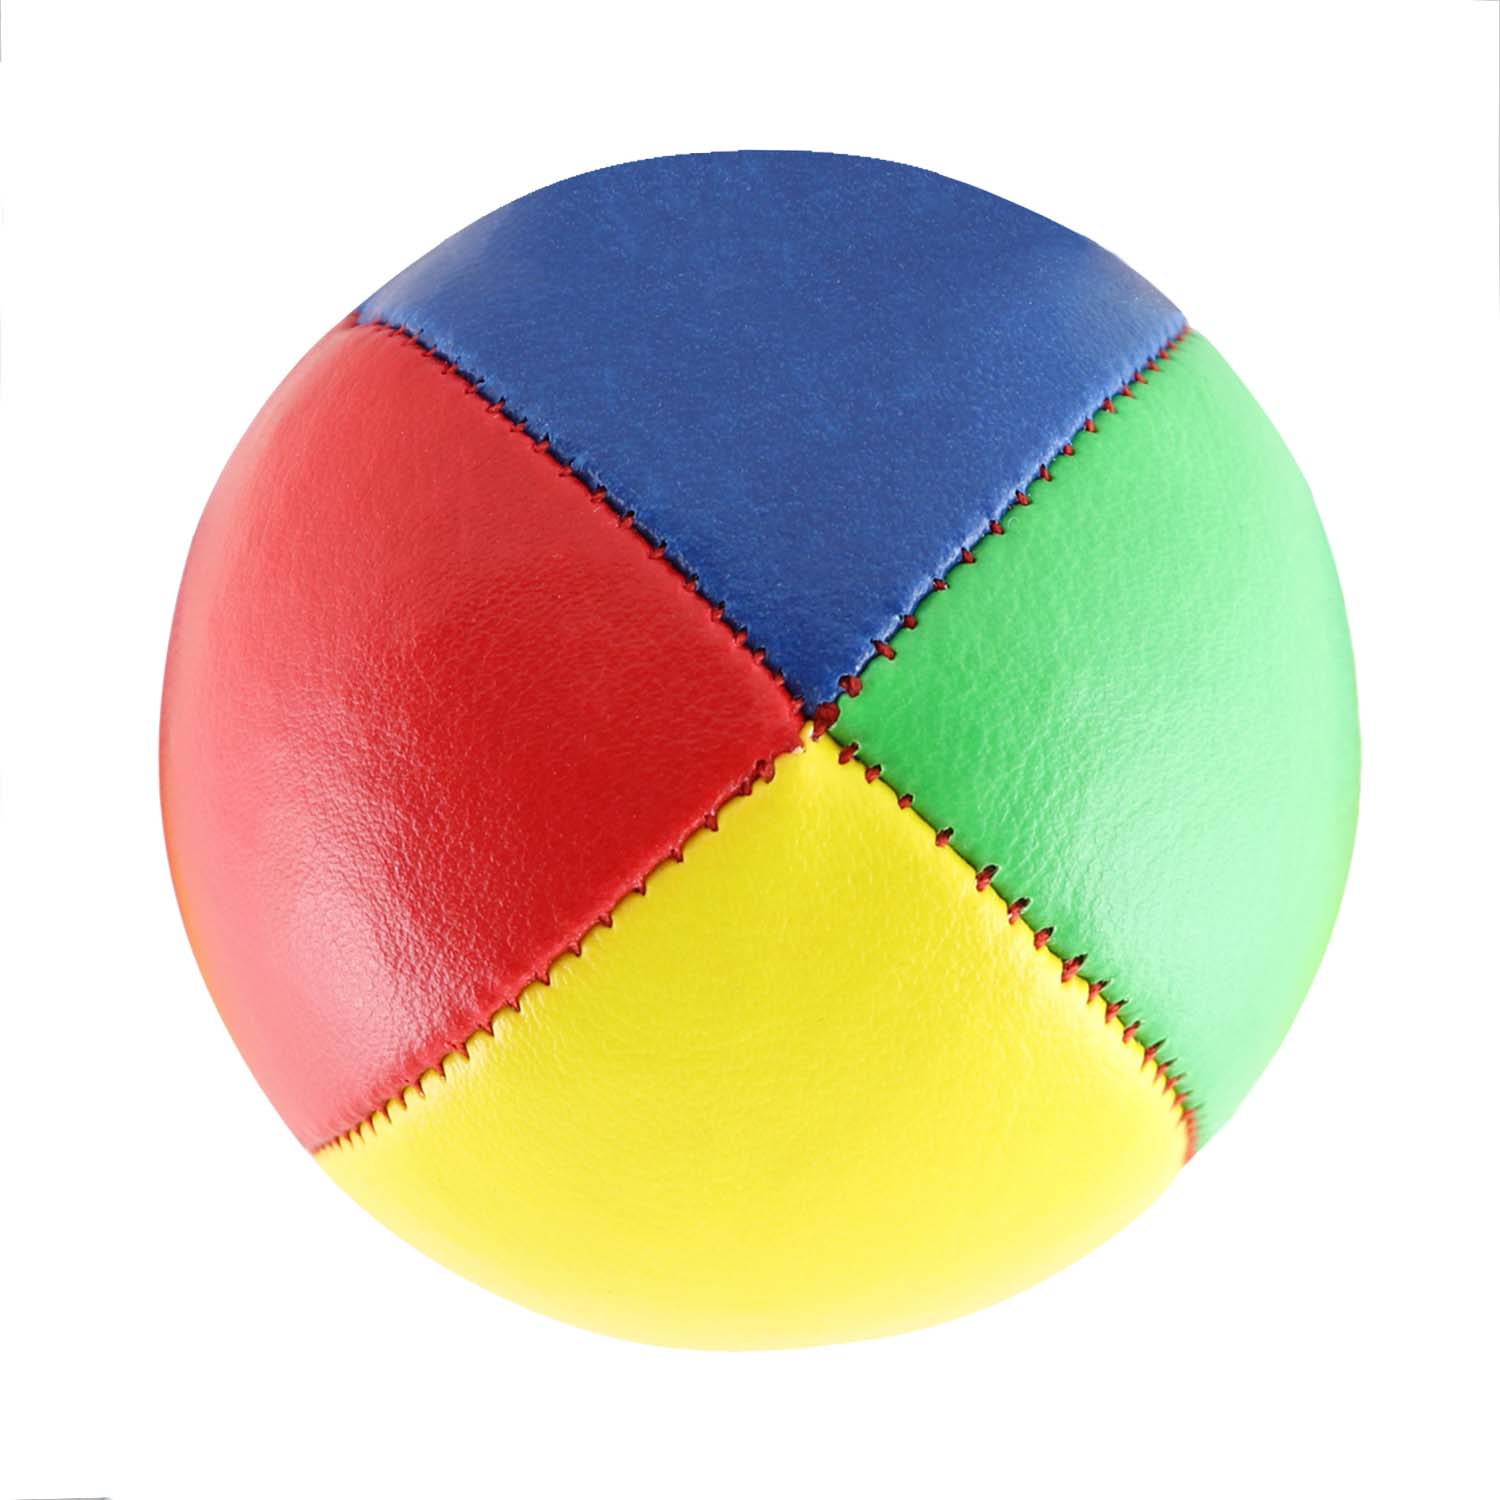 Diabolo Freizeitsport Jonglierball Set-Premium in gelb, blau, rot, grün kaufen!